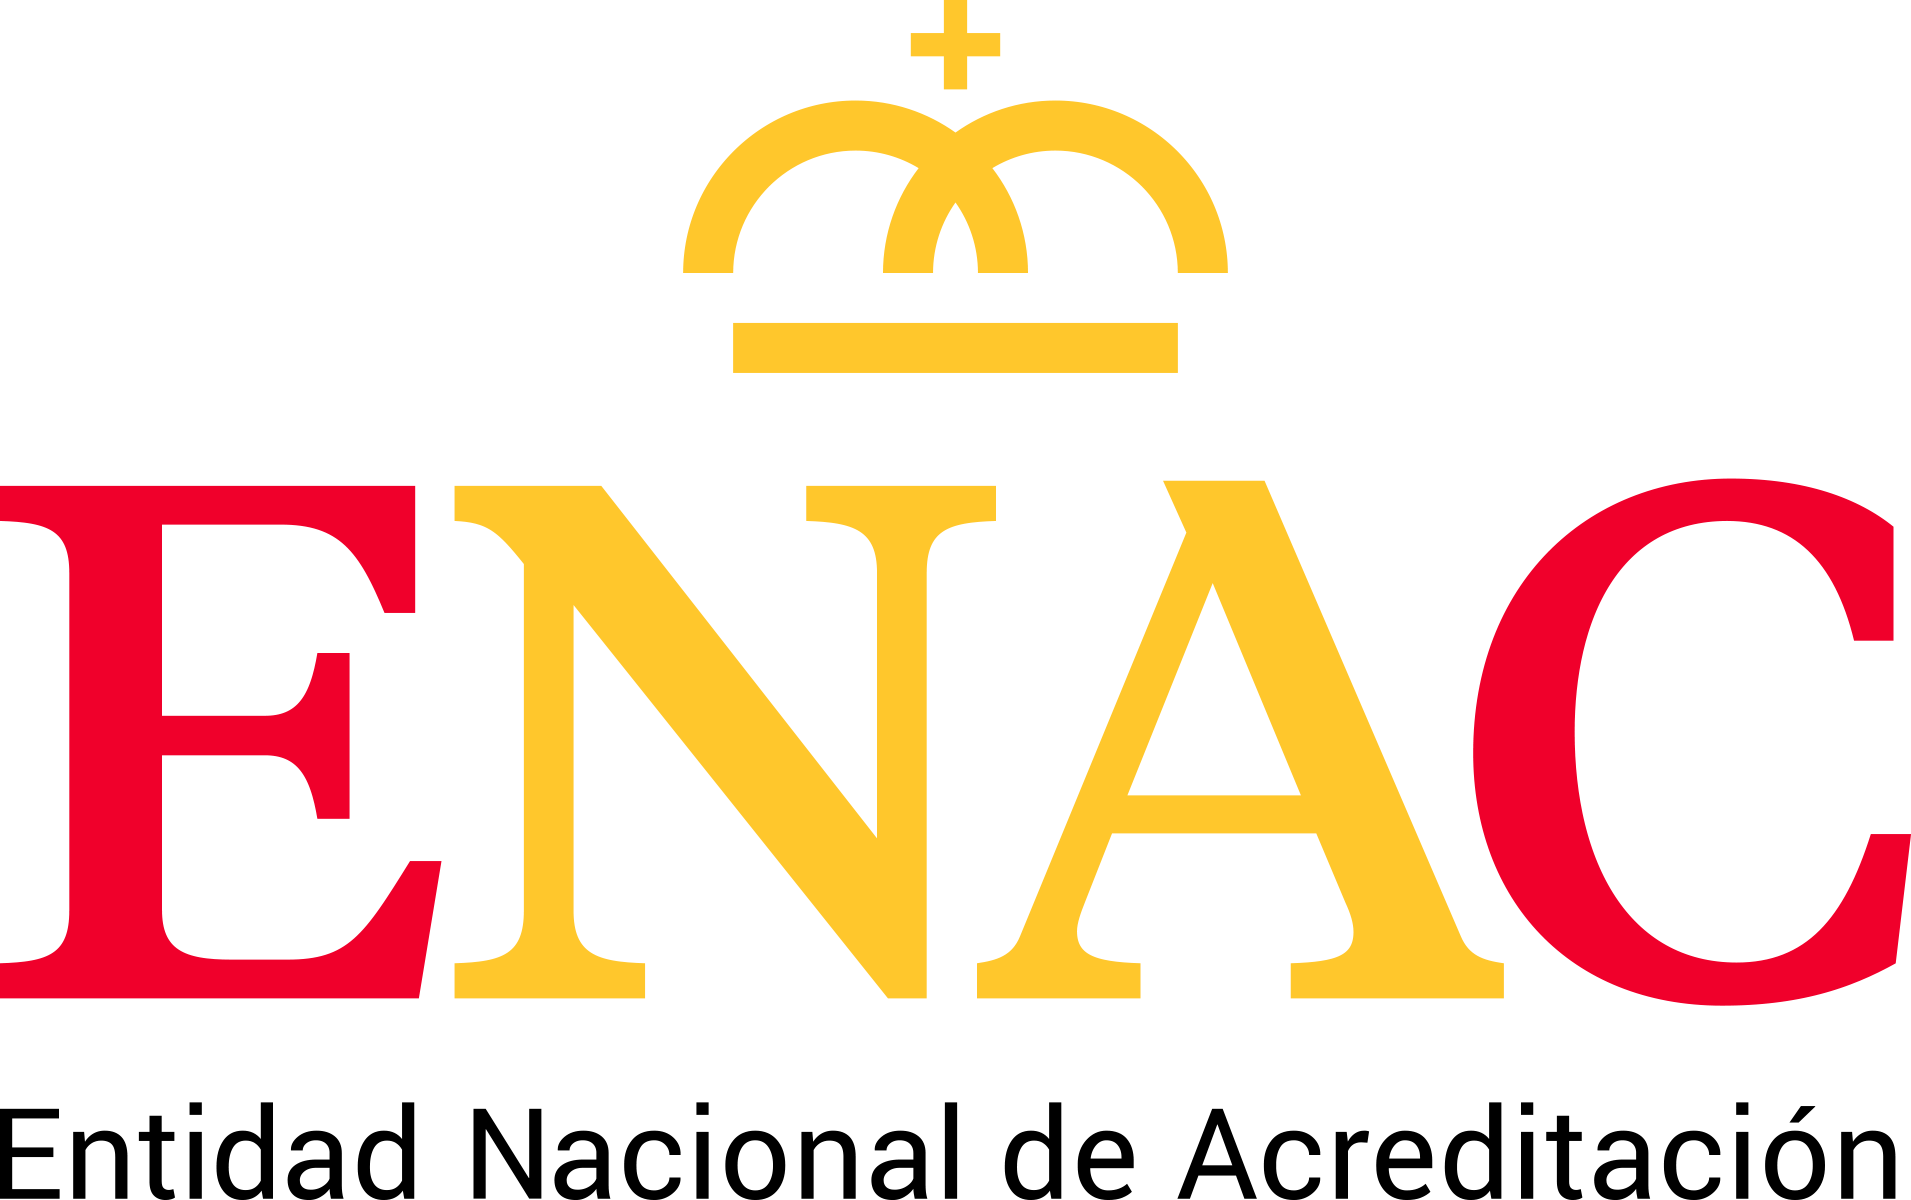 enac logo